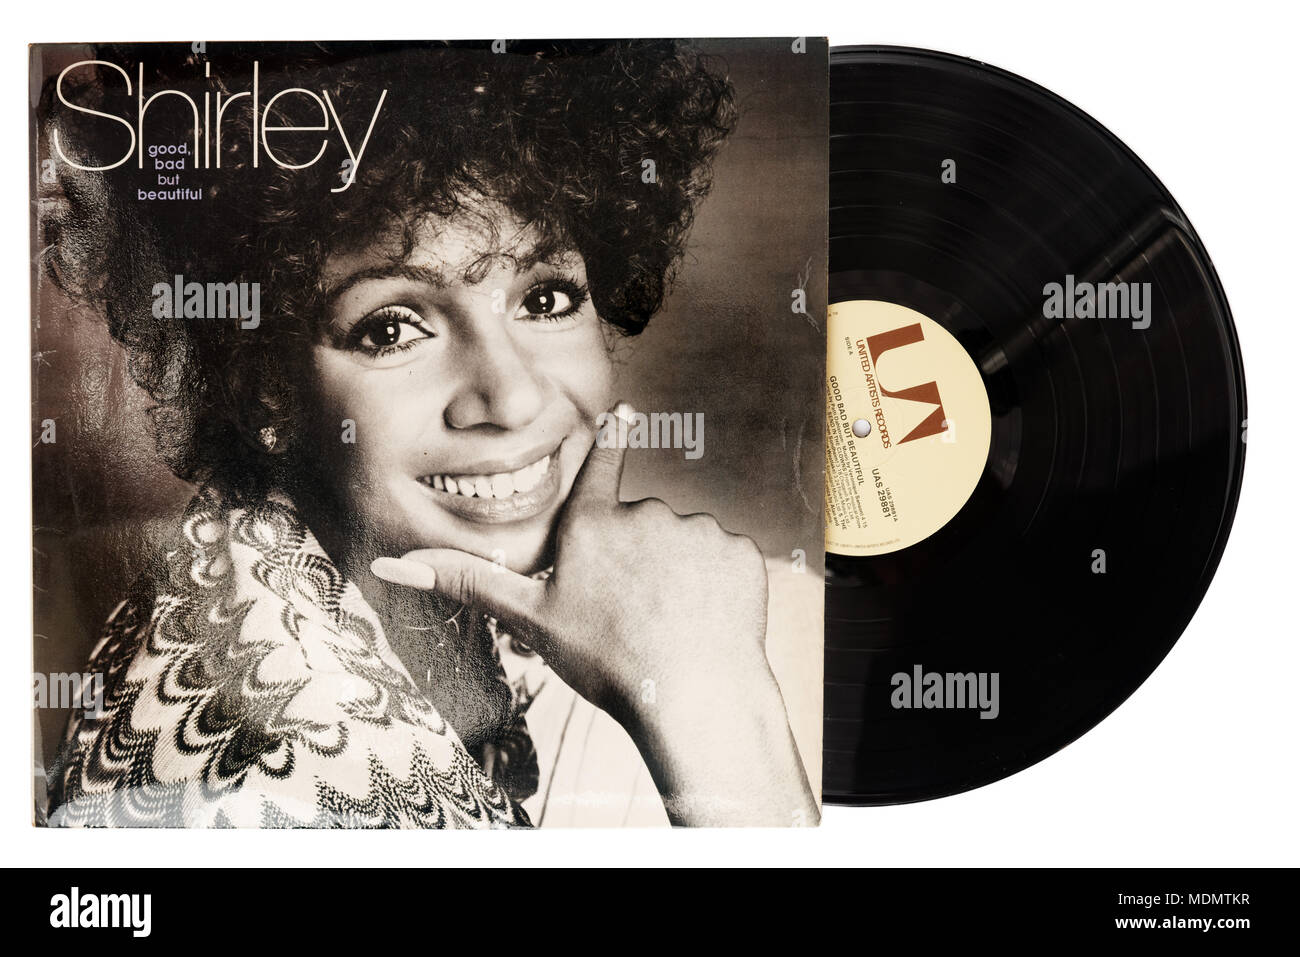 Gut Schlecht aber schönes Album von Shirley Bassey Stockfoto